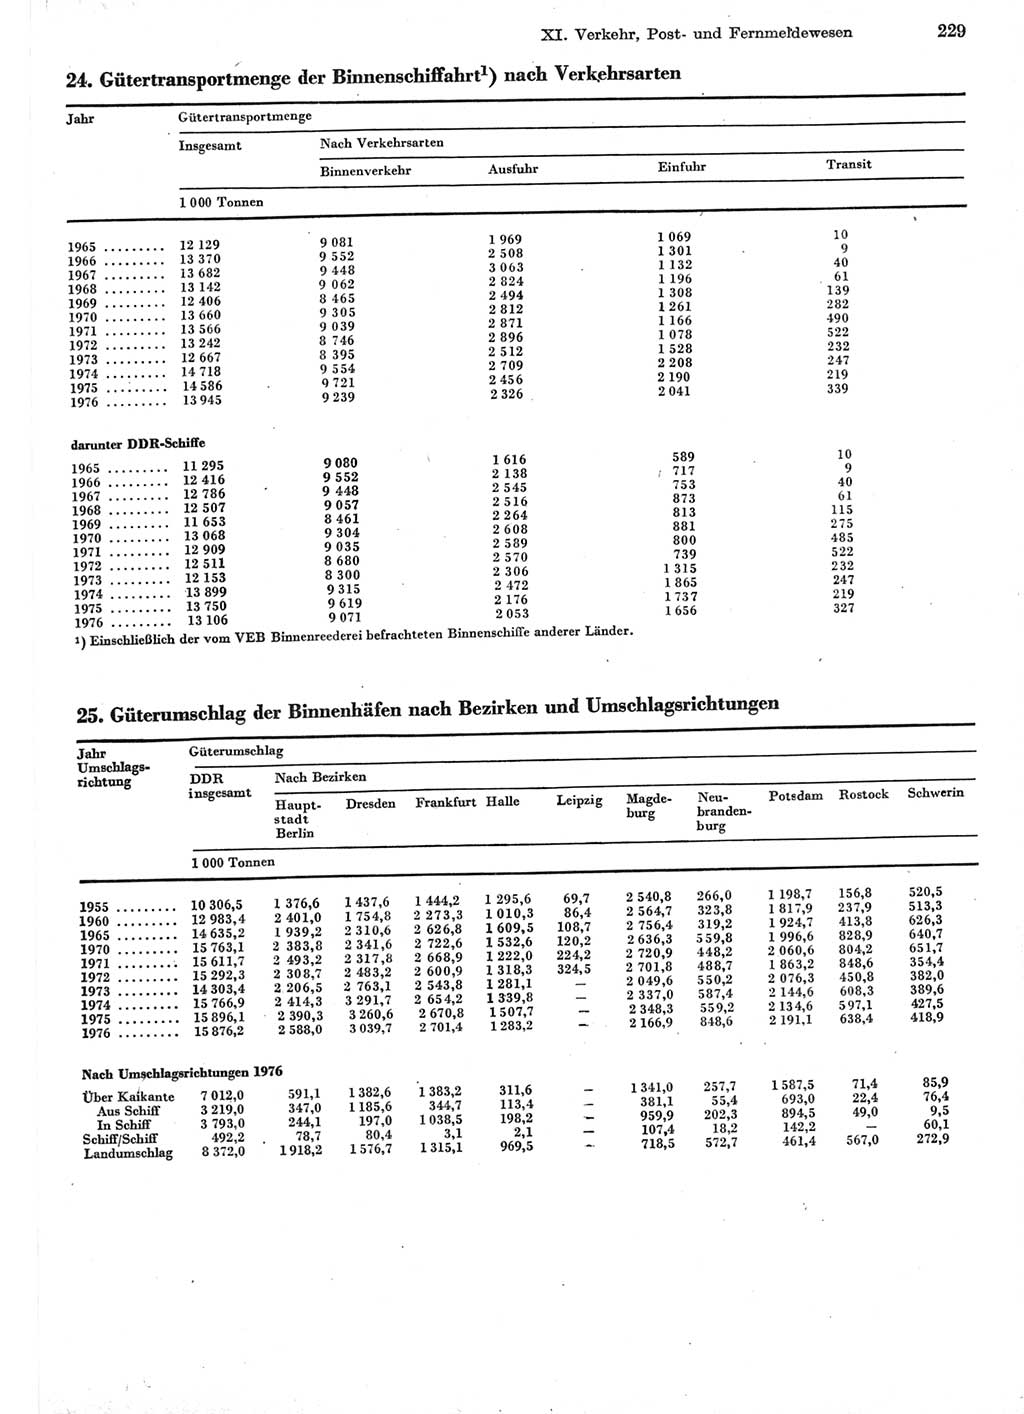 Statistisches Jahrbuch der Deutschen Demokratischen Republik (DDR) 1977, Seite 229 (Stat. Jb. DDR 1977, S. 229)